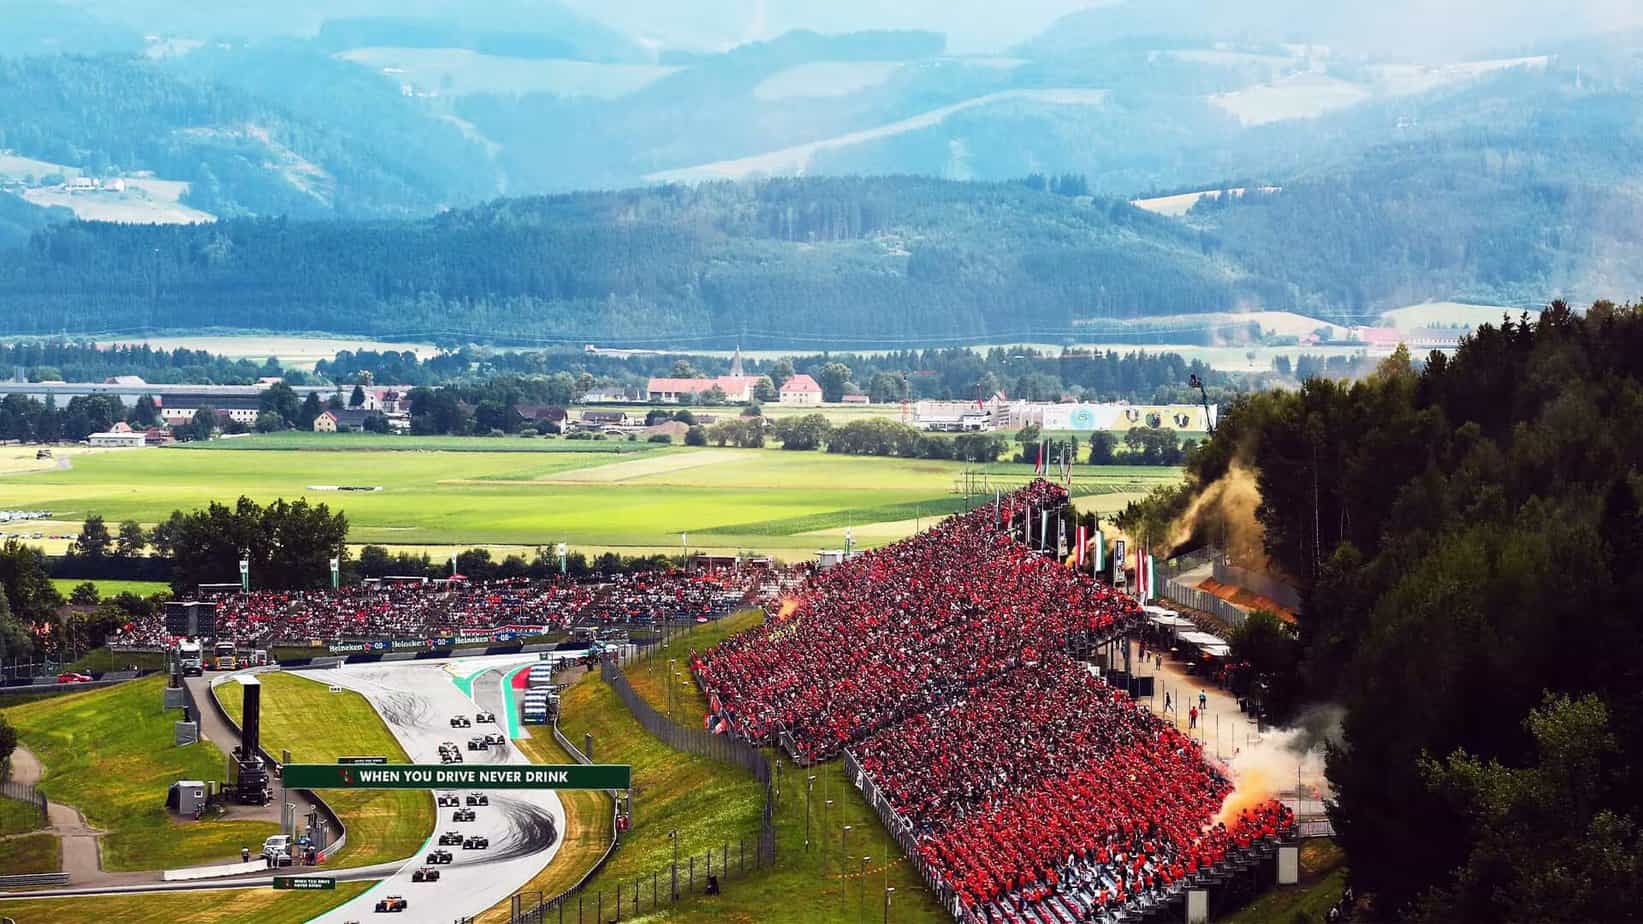 Vista previa y cuotas de apuestas del GP de Austria 2023